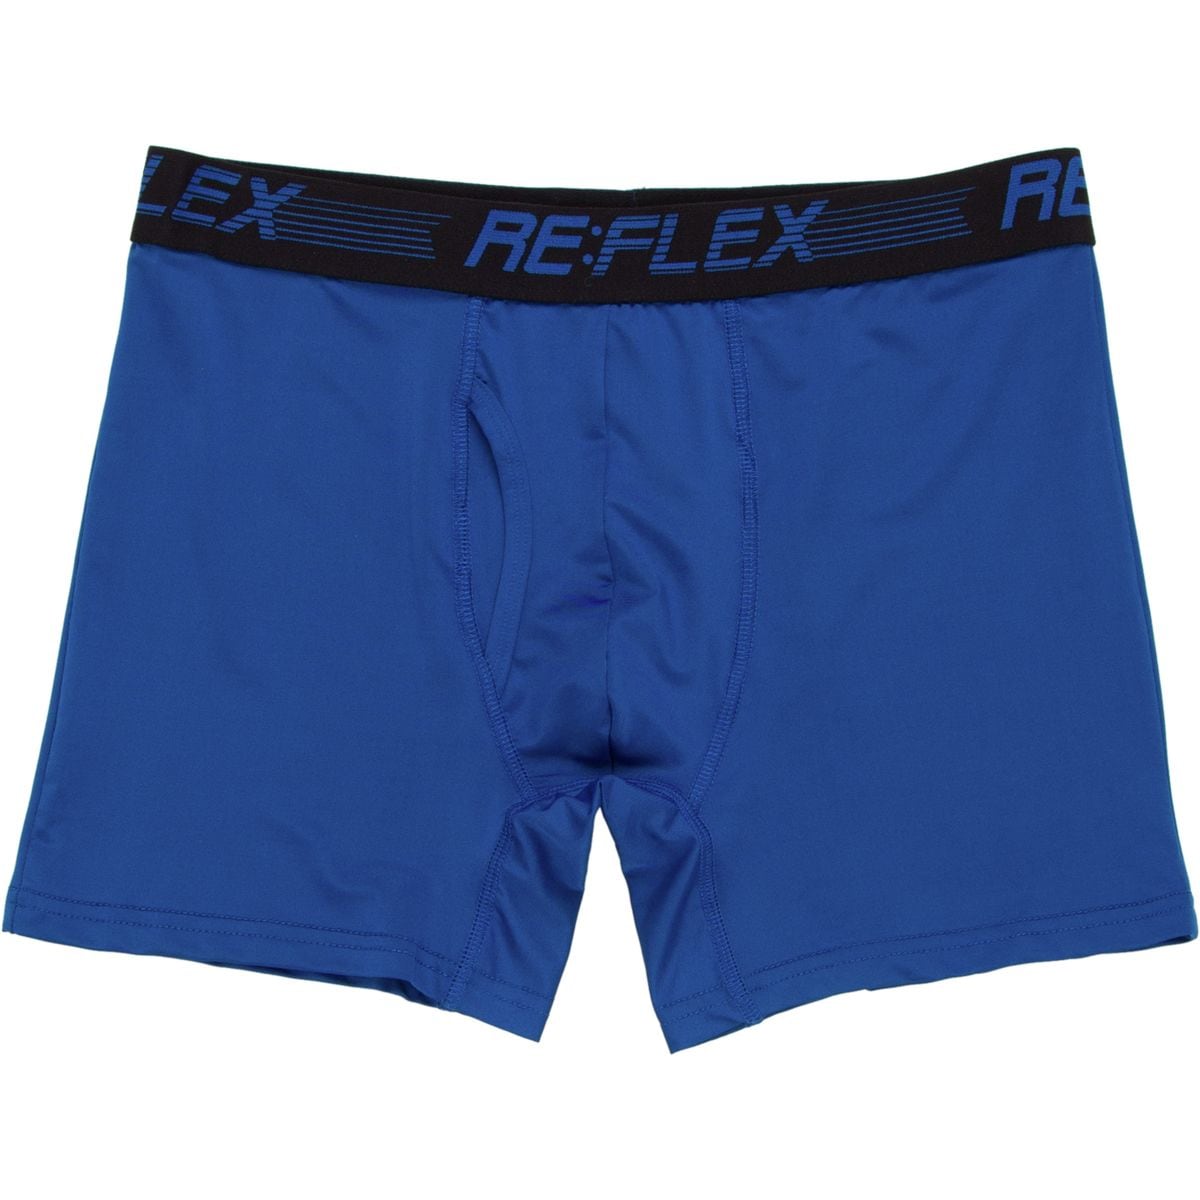 RE:FLEX Underwear - Performance Essentials - Touch of Modern